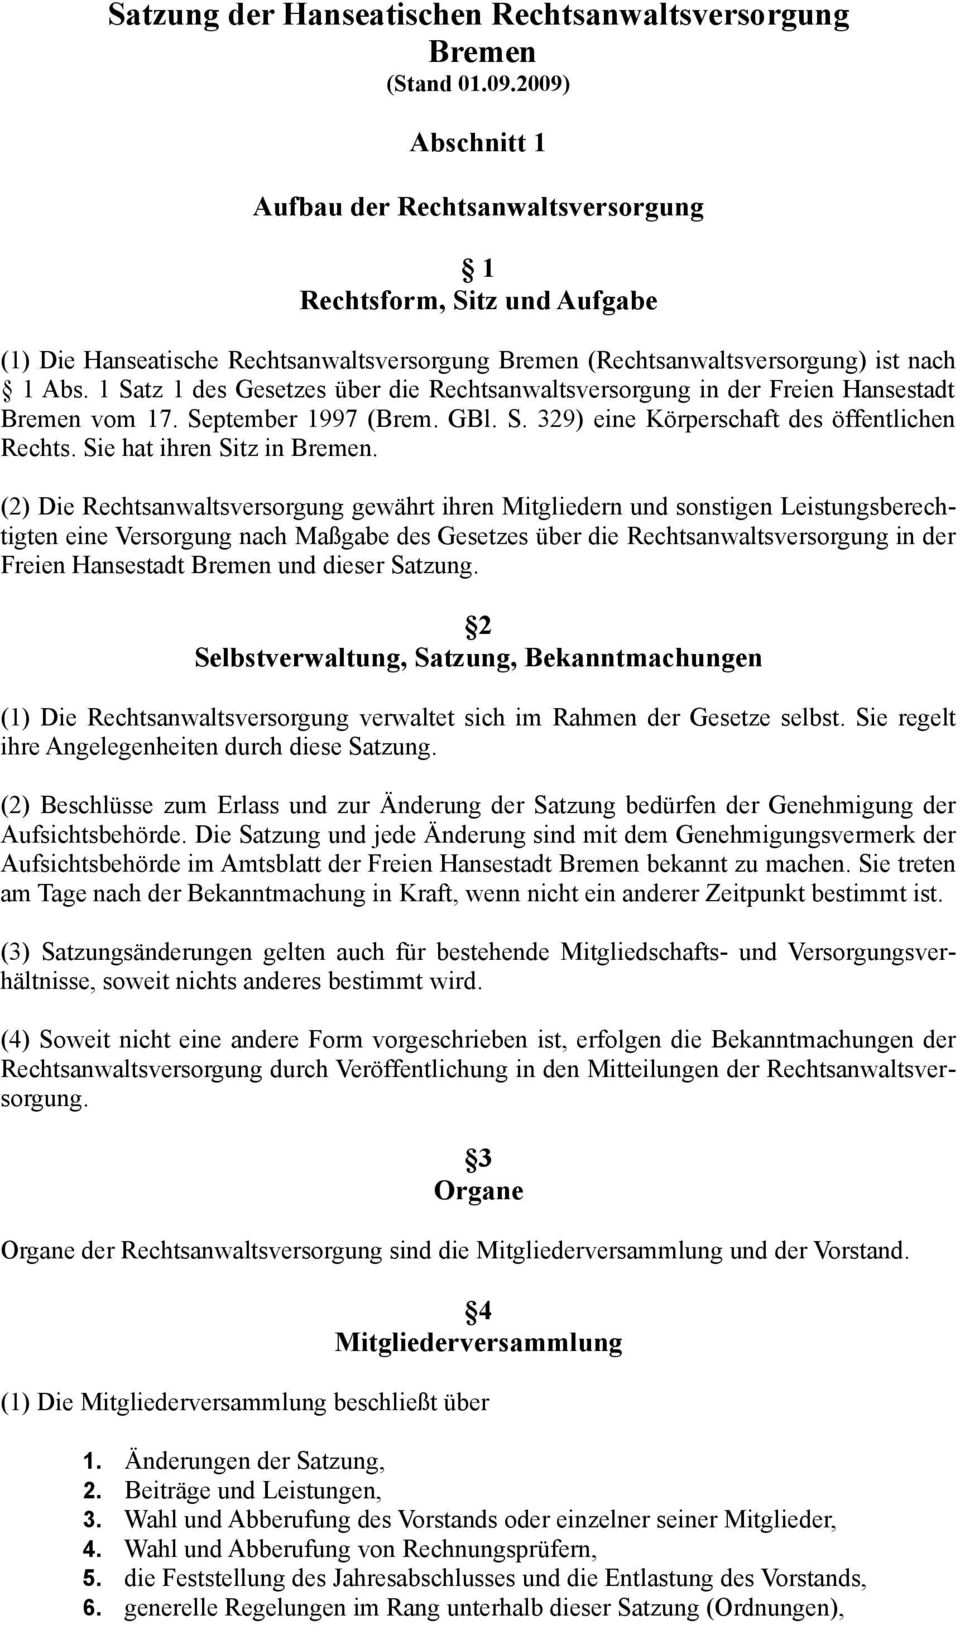 1 Satz 1 des Gesetzes über die Rechtsanwaltsversorgung in der Freien Hansestadt Bremen vom 17. September 1997 (Brem. GBl. S. 329) eine Körperschaft des öffentlichen Rechts.